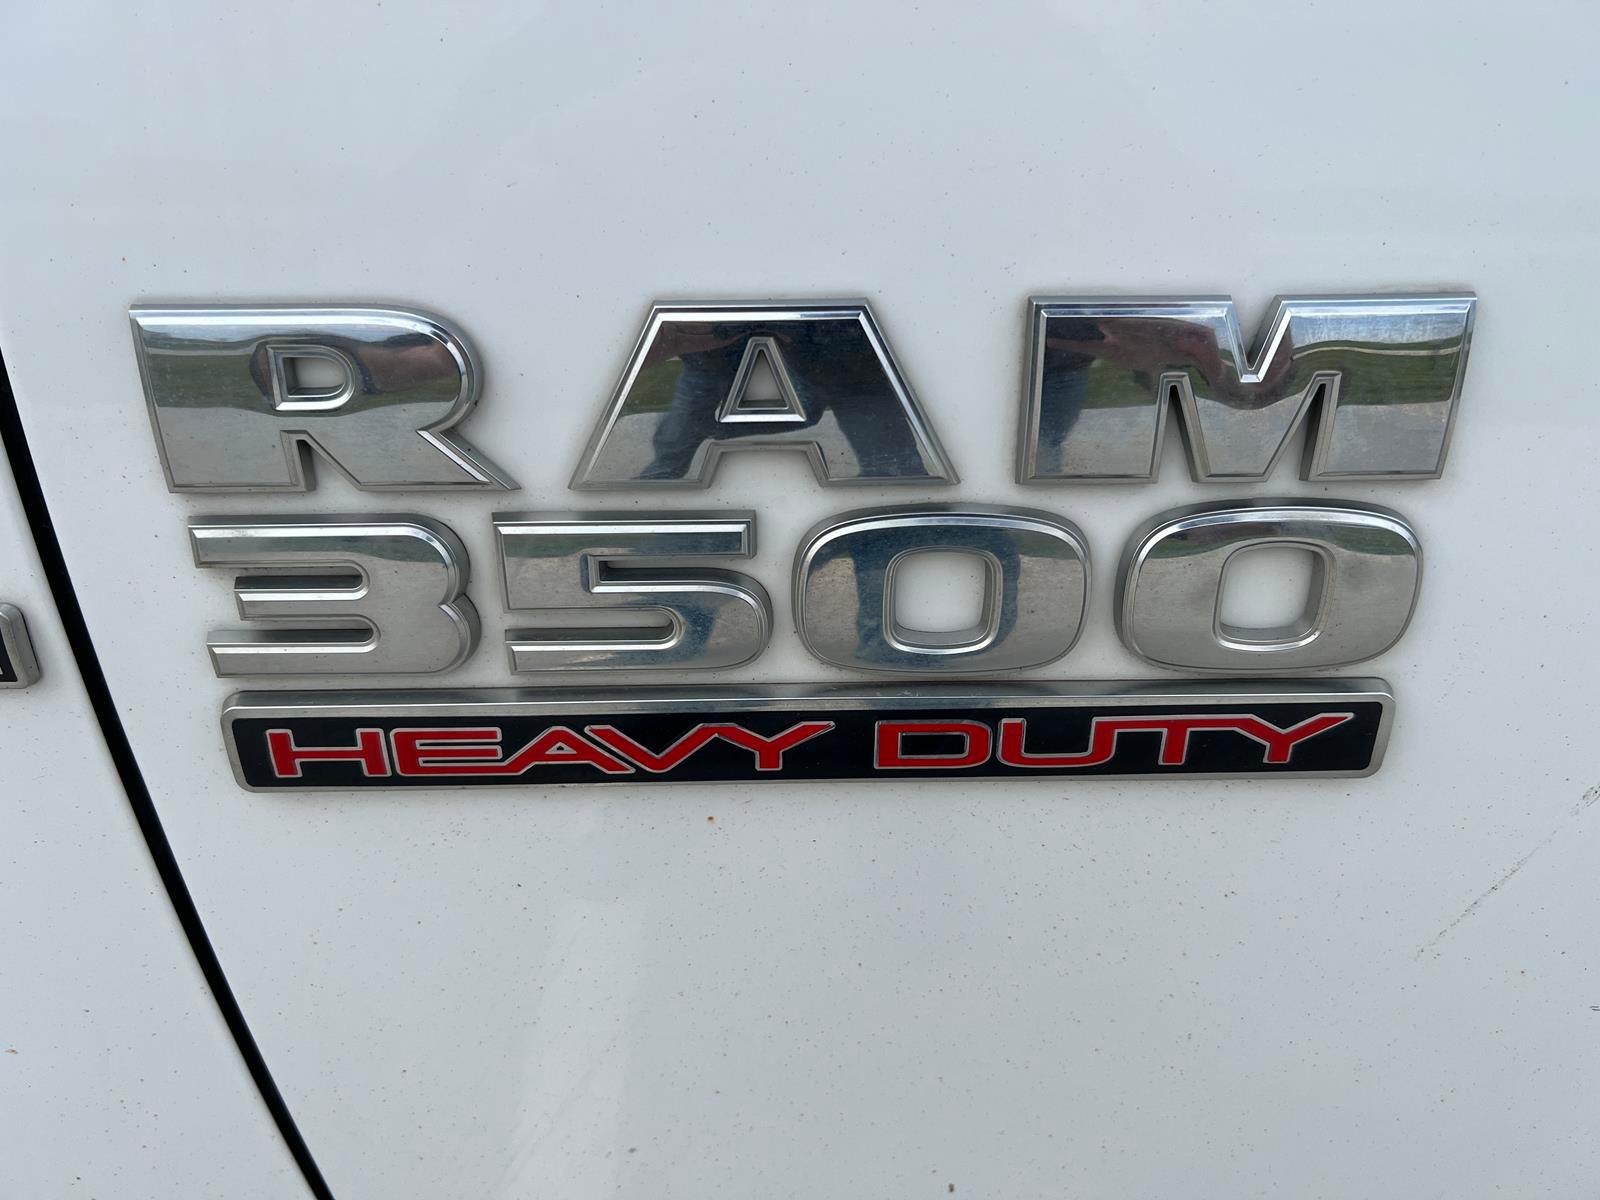 2013 Ram 3500 Heavy Duty Pickup - Diesel